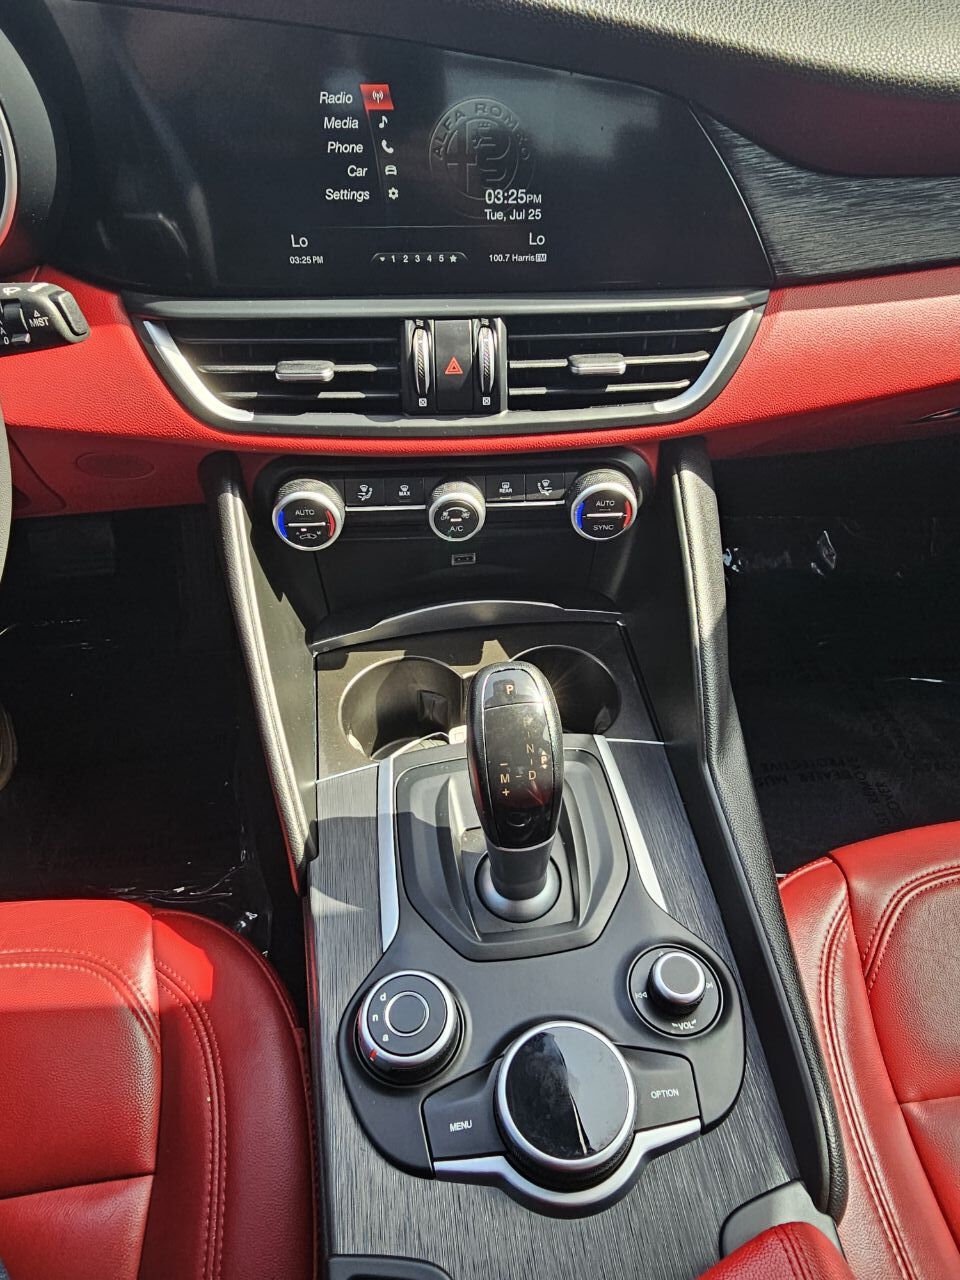 2019 ALFA ROMEO Giulia (952) Sedan - $19,495